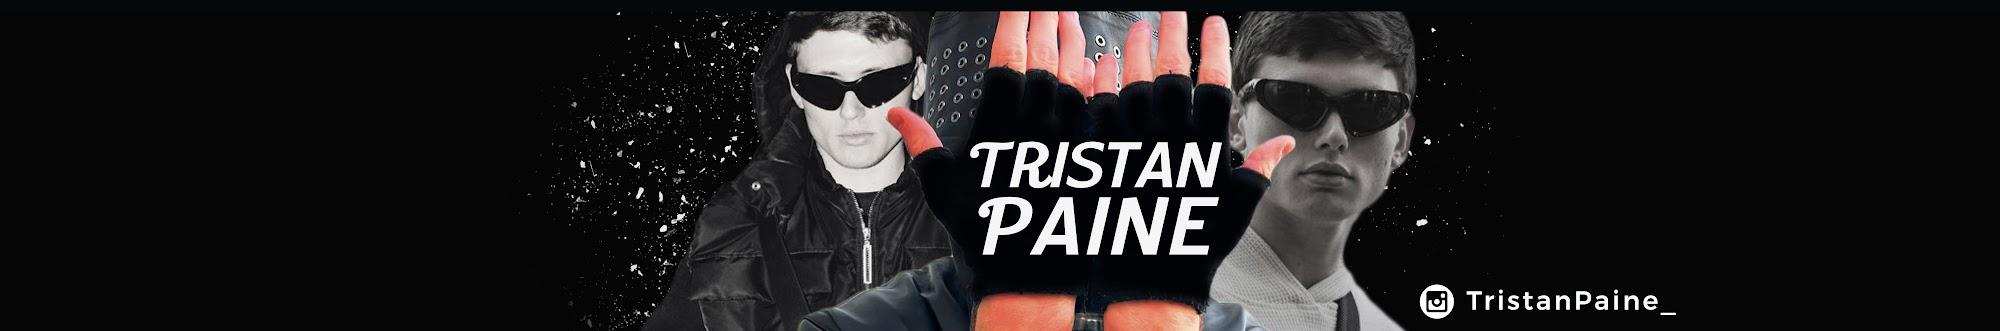 Tristan Paine